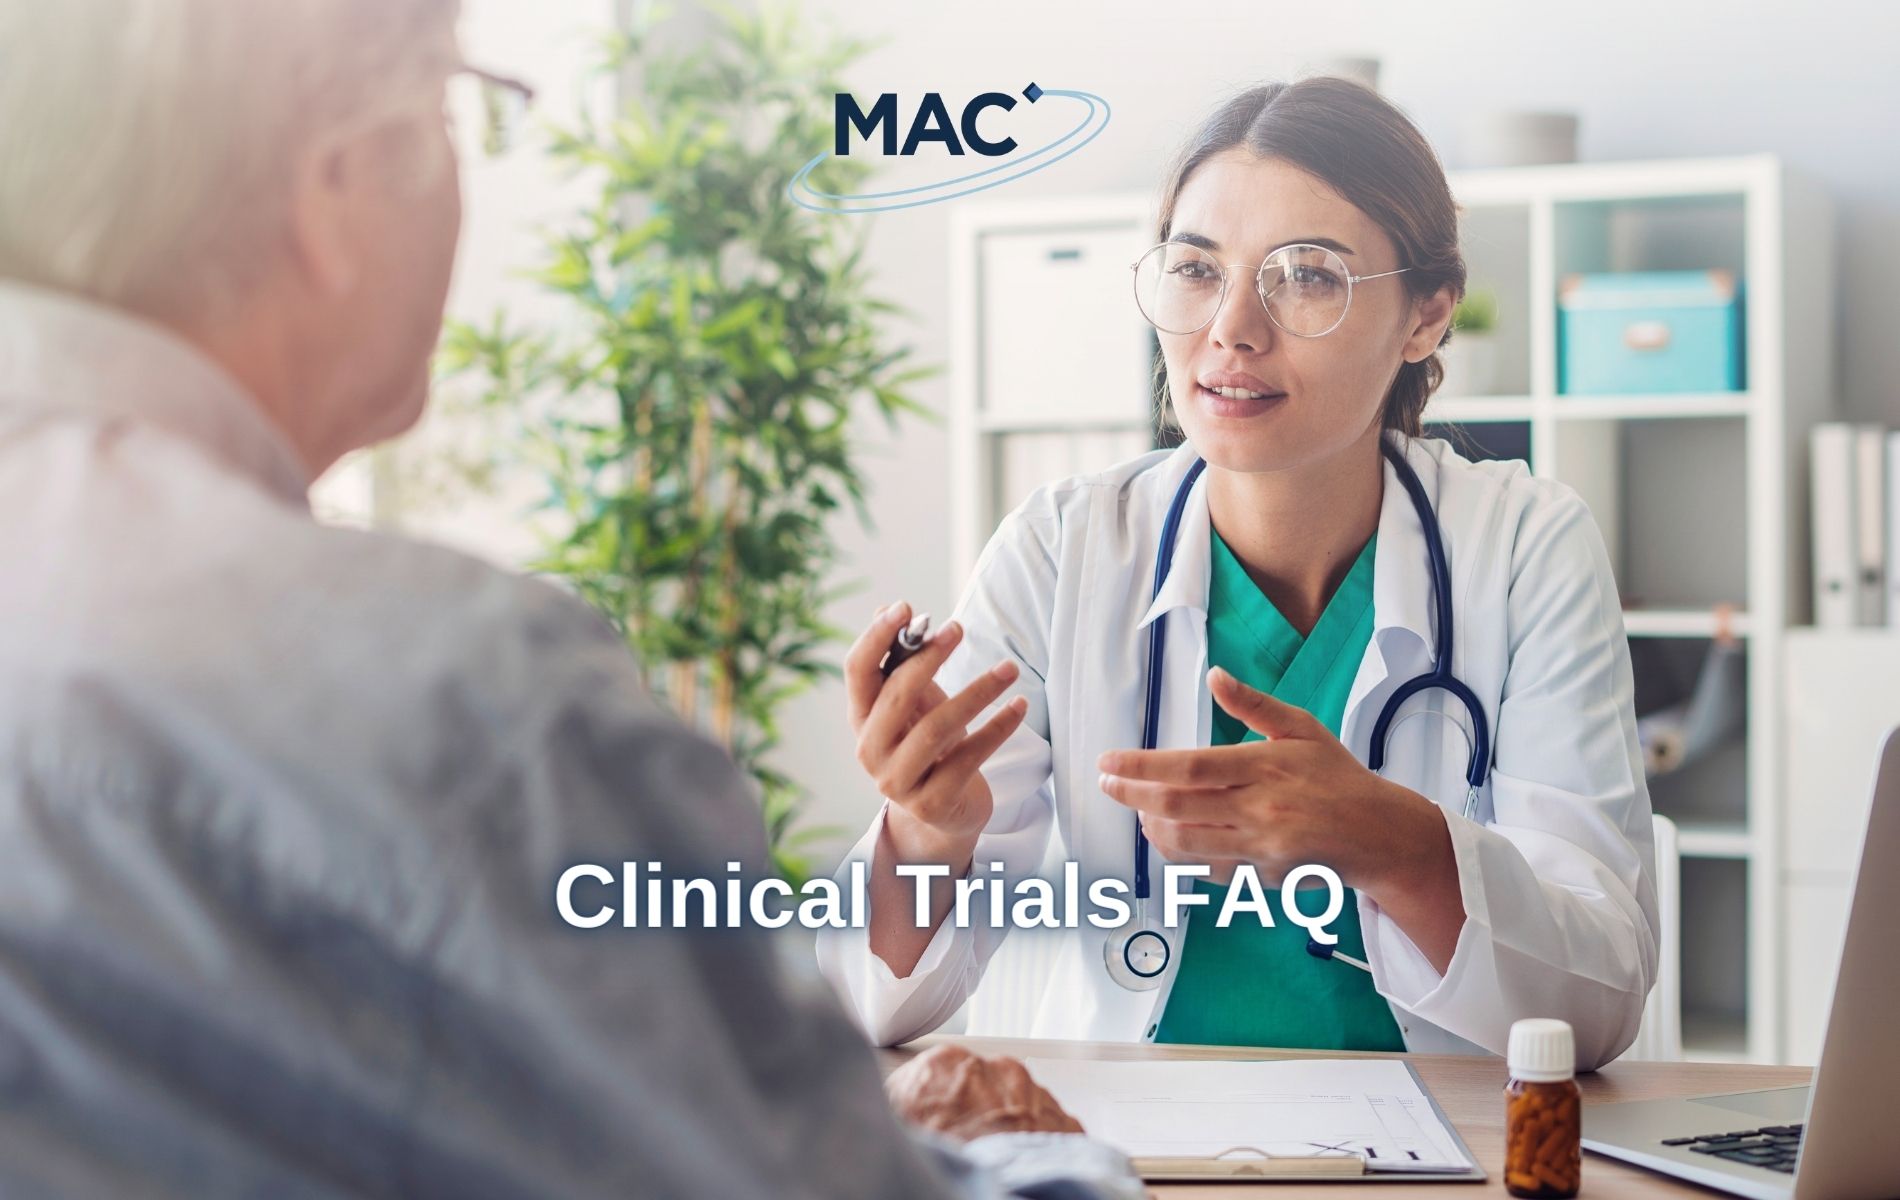 Clinical Trials FAQ